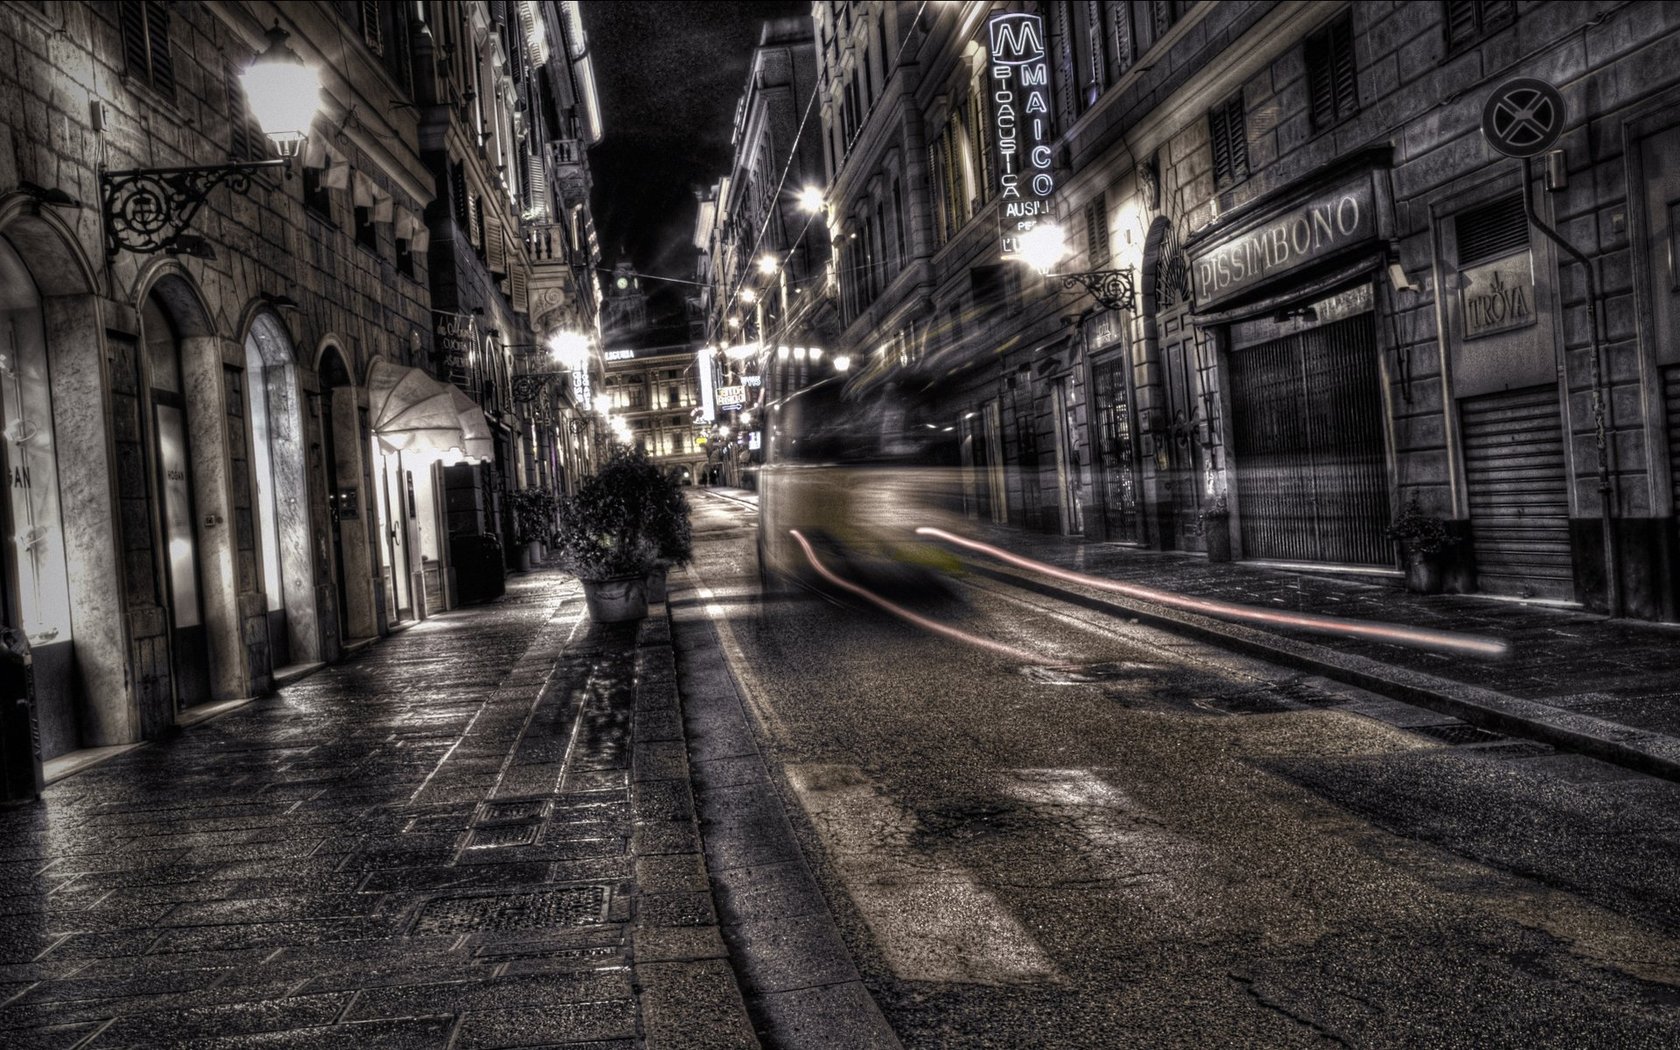 Thưởng thức hình nền đường phố tối tăm đầy bí ẩn, khiến bạn ngẩn ngơ và kéo dài sự xuất hiện trên màn hình của bạn. Cảm thấy như mình đang một mình đi trên đường phố đầy nắm đen nhưng cũng rất đầy hứng khởi.